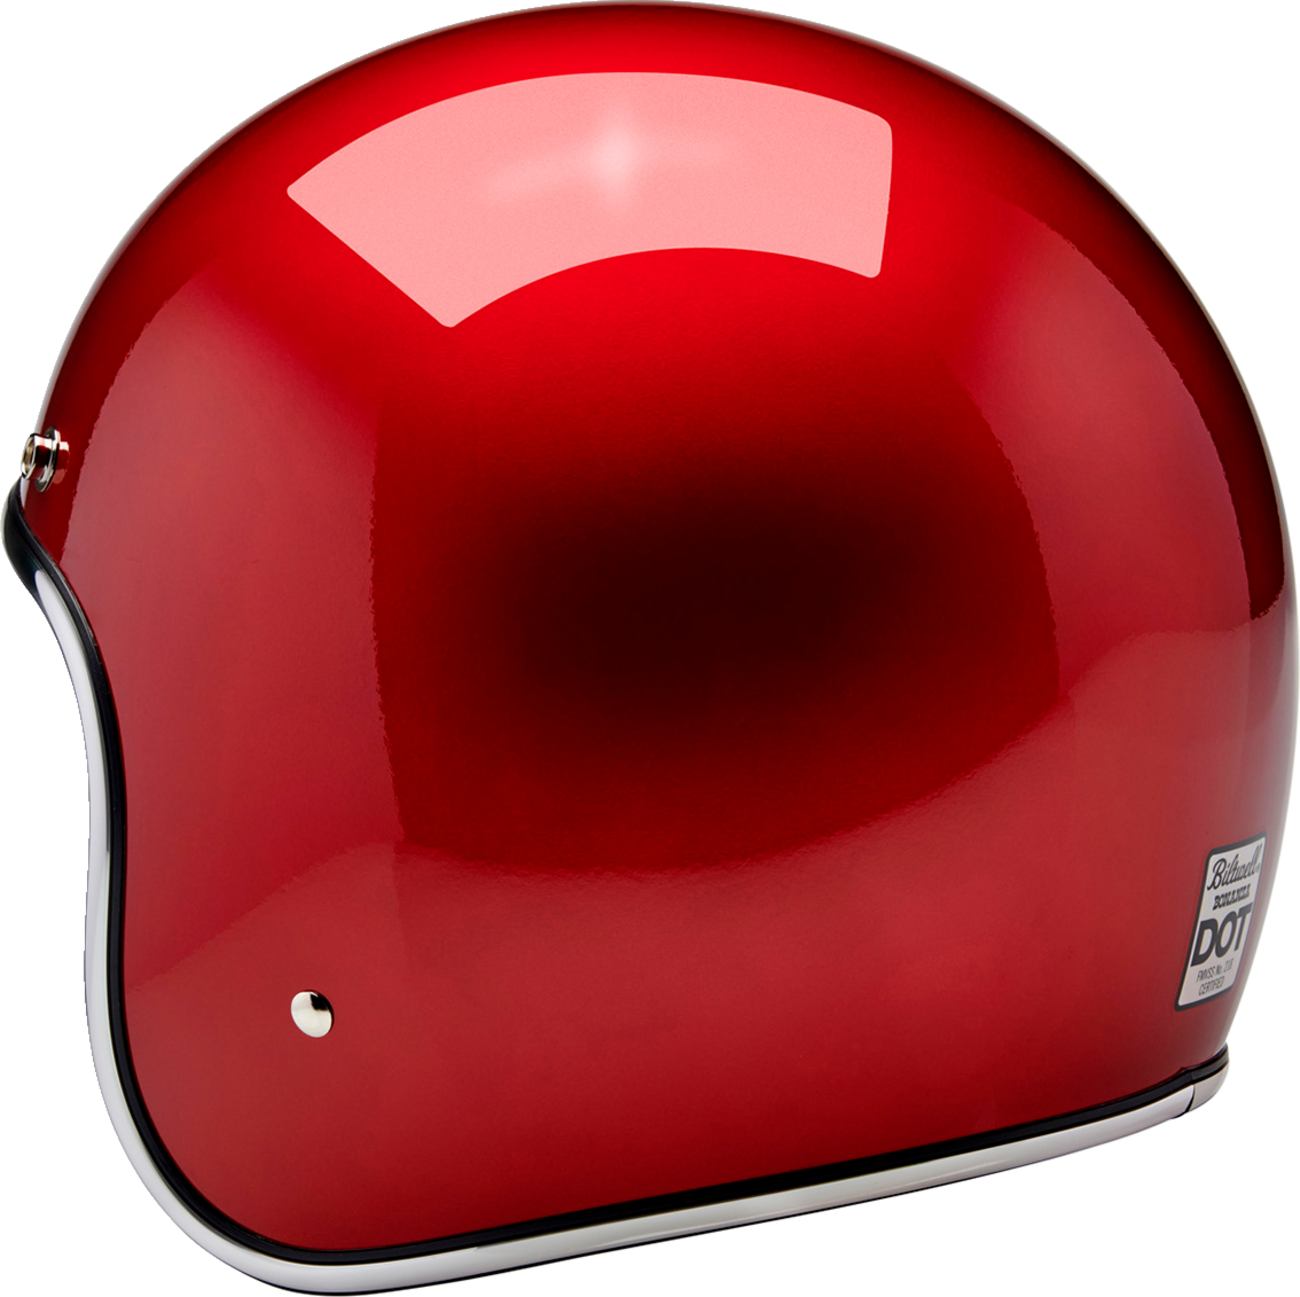 BILTWELL Bonanza Helmet - Metallic Cherry Red - Small 1001-351-202